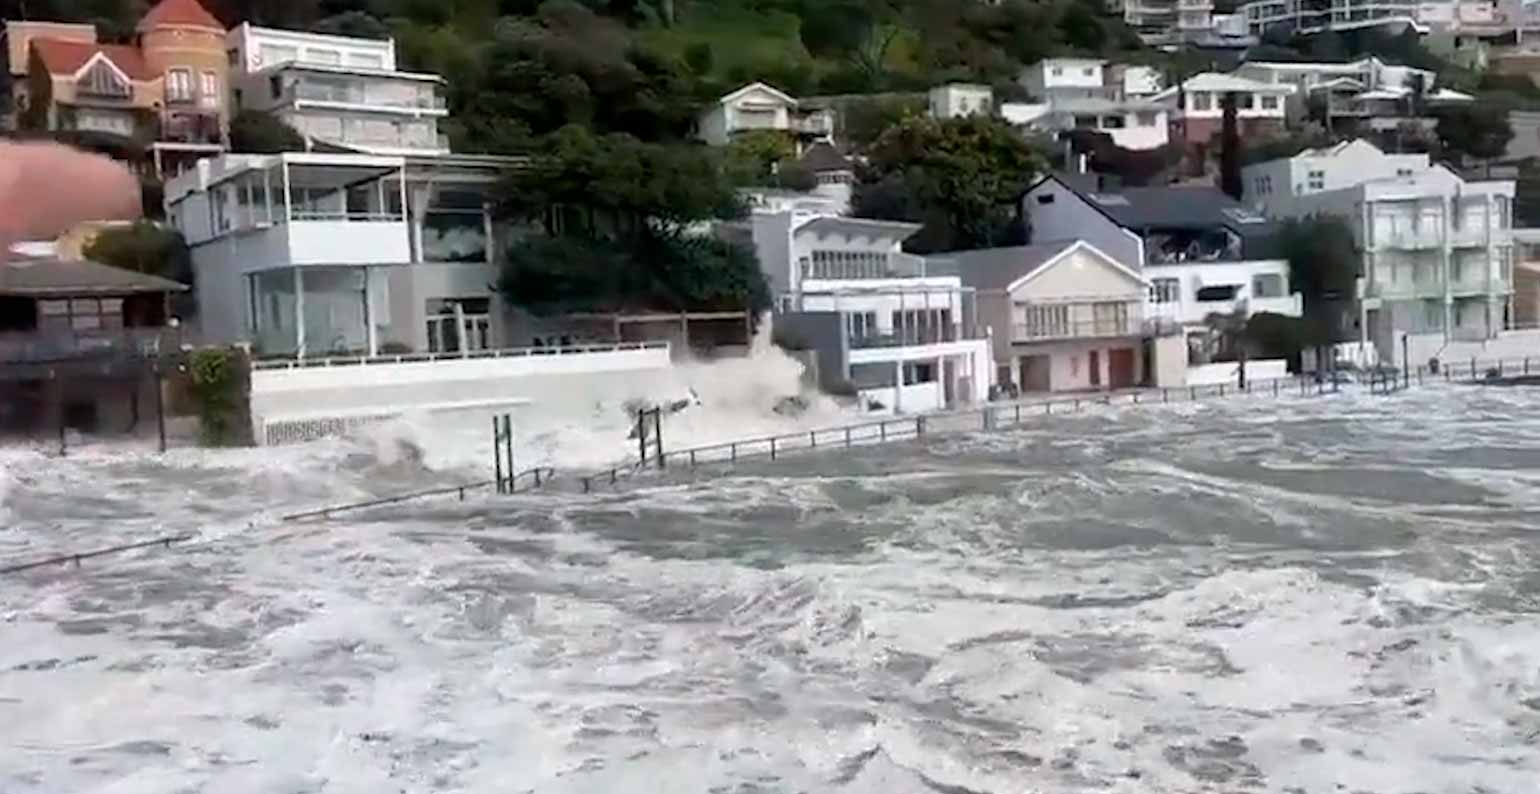 فيديو: موجة ضخمة تجرف السيارات وتغمر المدن في جنوب أفريقيا. الصور والفيديو: منشور على تويتر @Top_Disaster